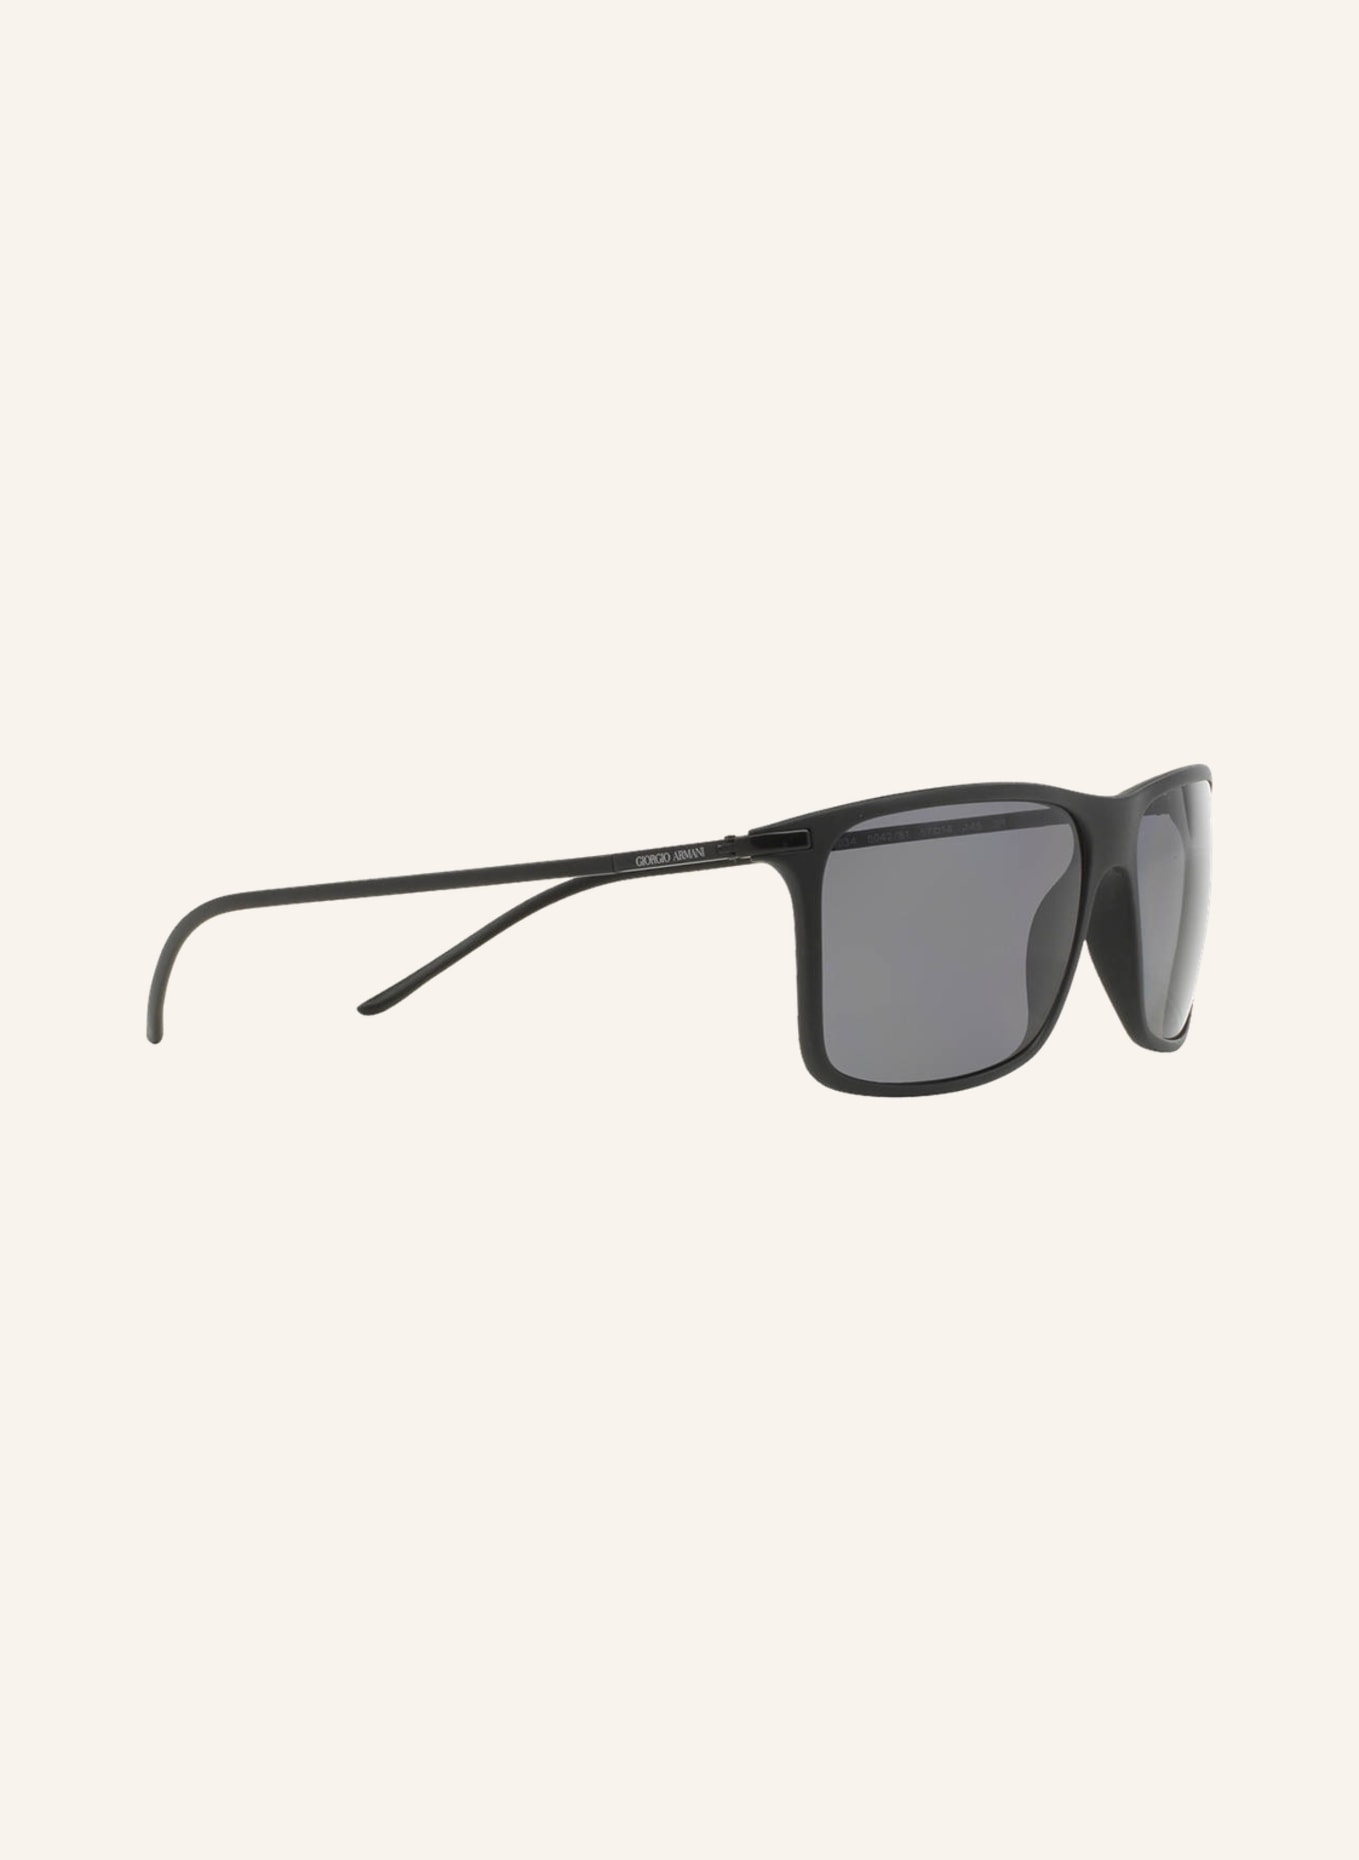 EMPORIO ARMANI Sunglasses AR8034, Color: 504281 - MATTE BLACK/GRAY POLARIZED (Image 3)